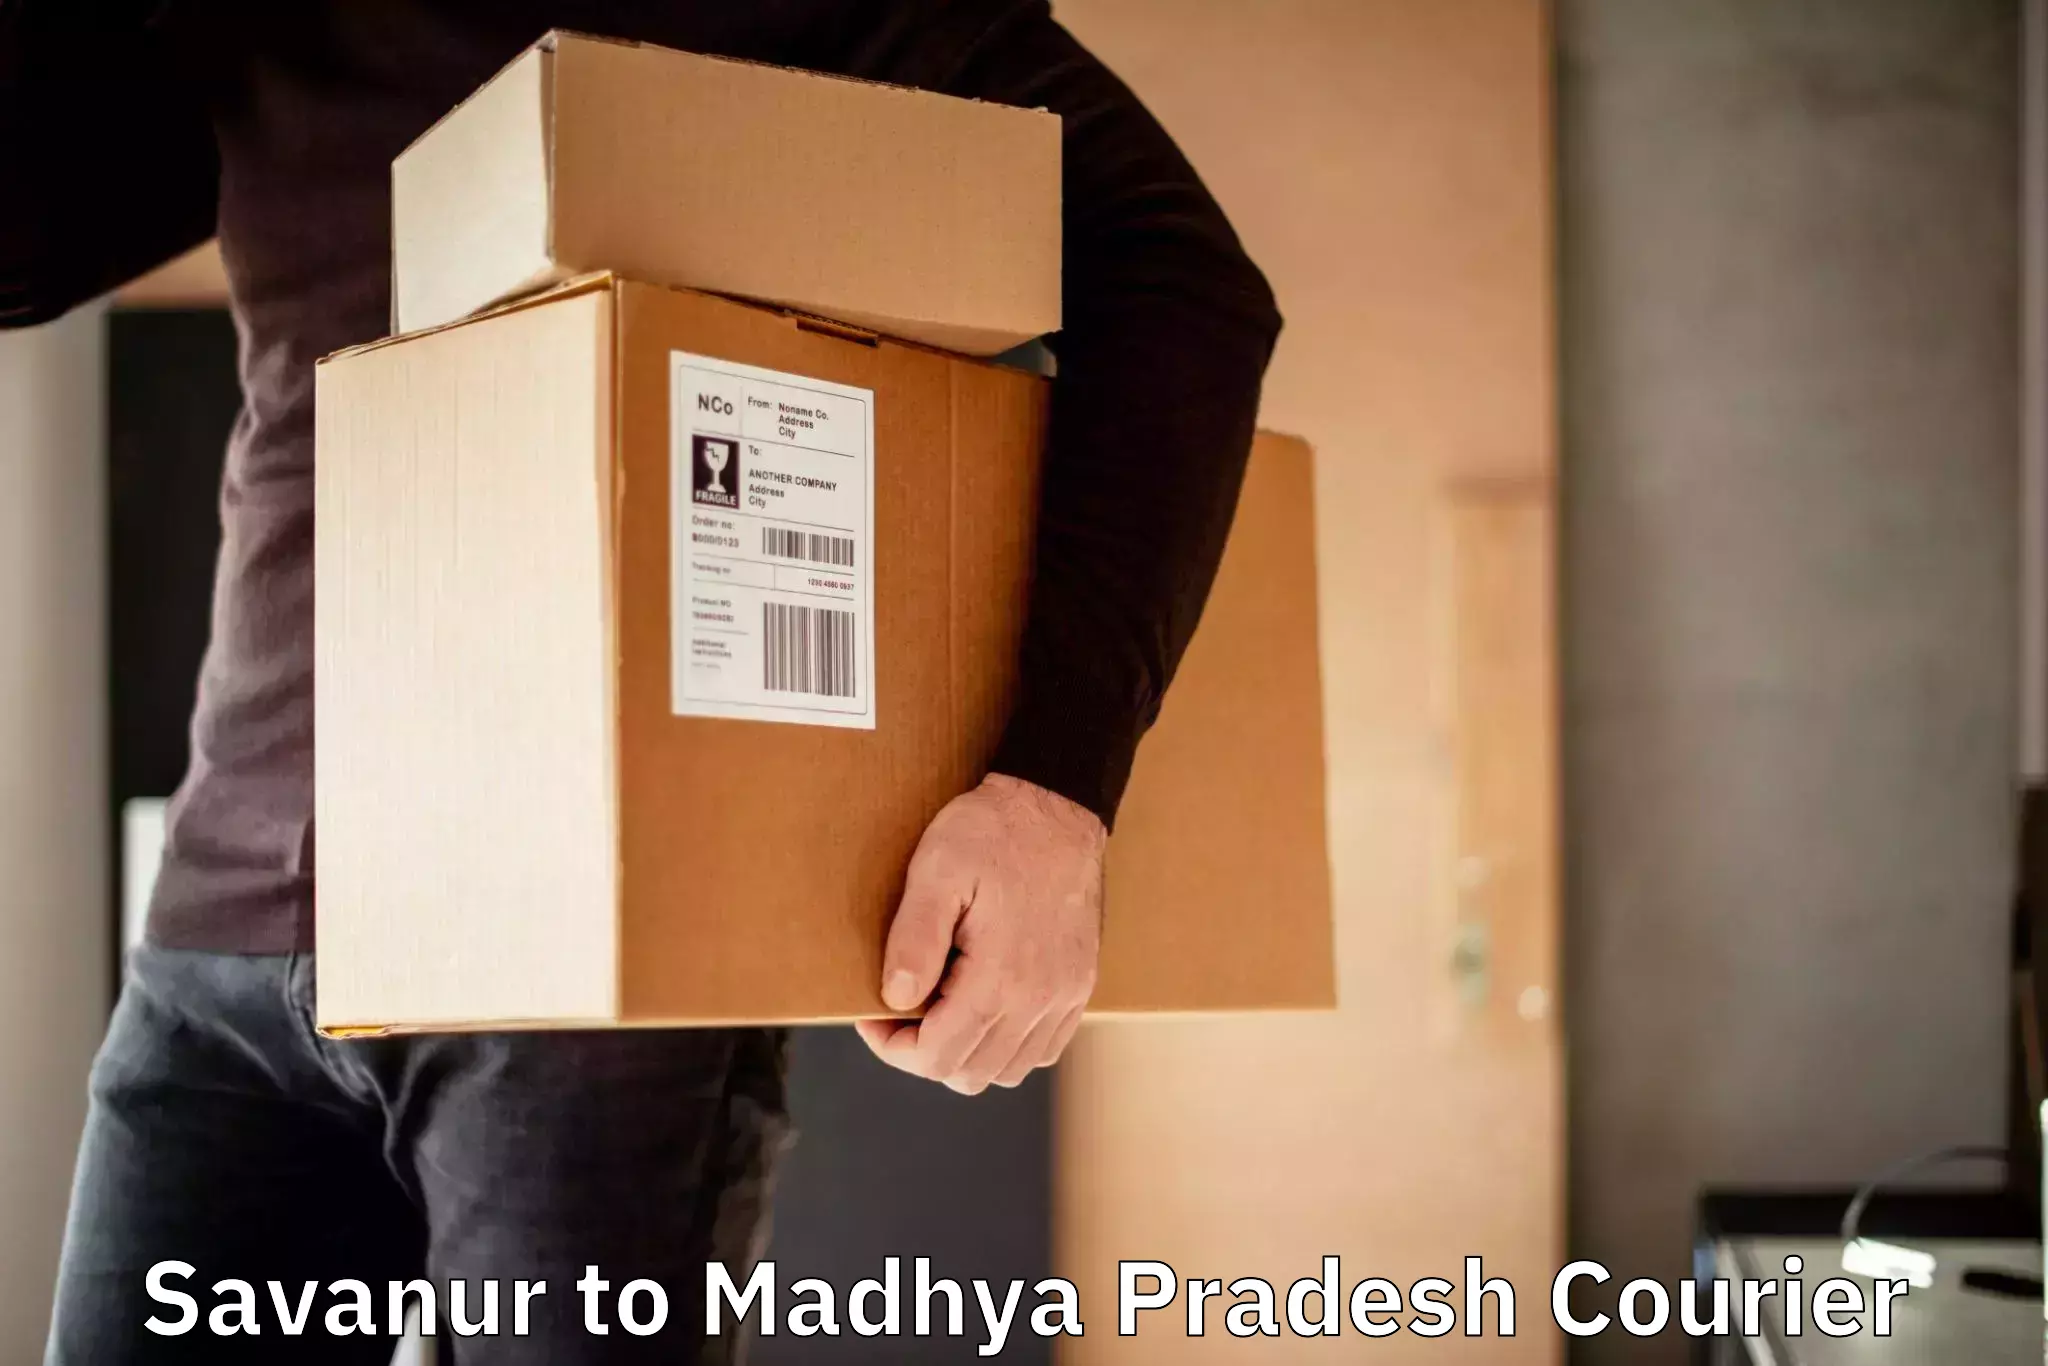 Lightweight courier Savanur to Madhya Pradesh